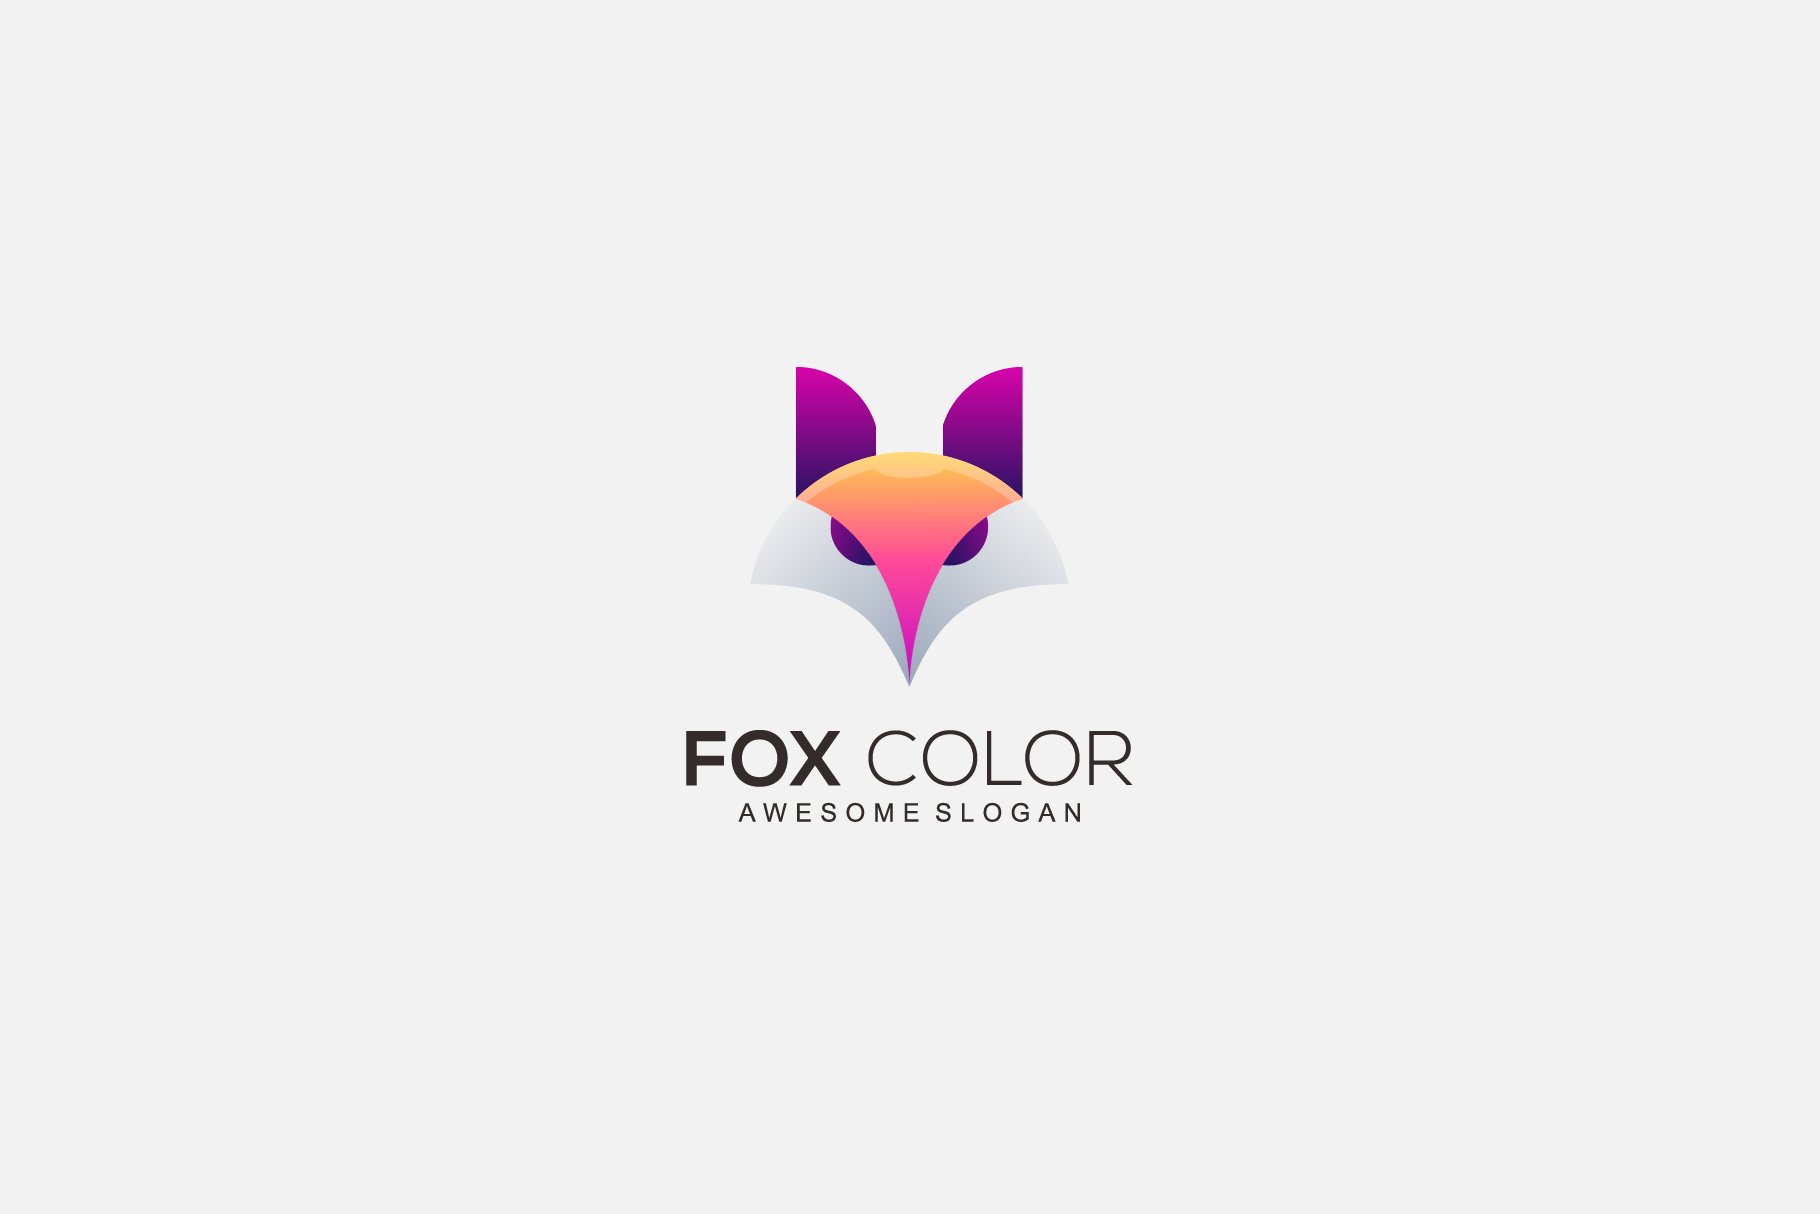 fox head logo colorful design templa cover image.